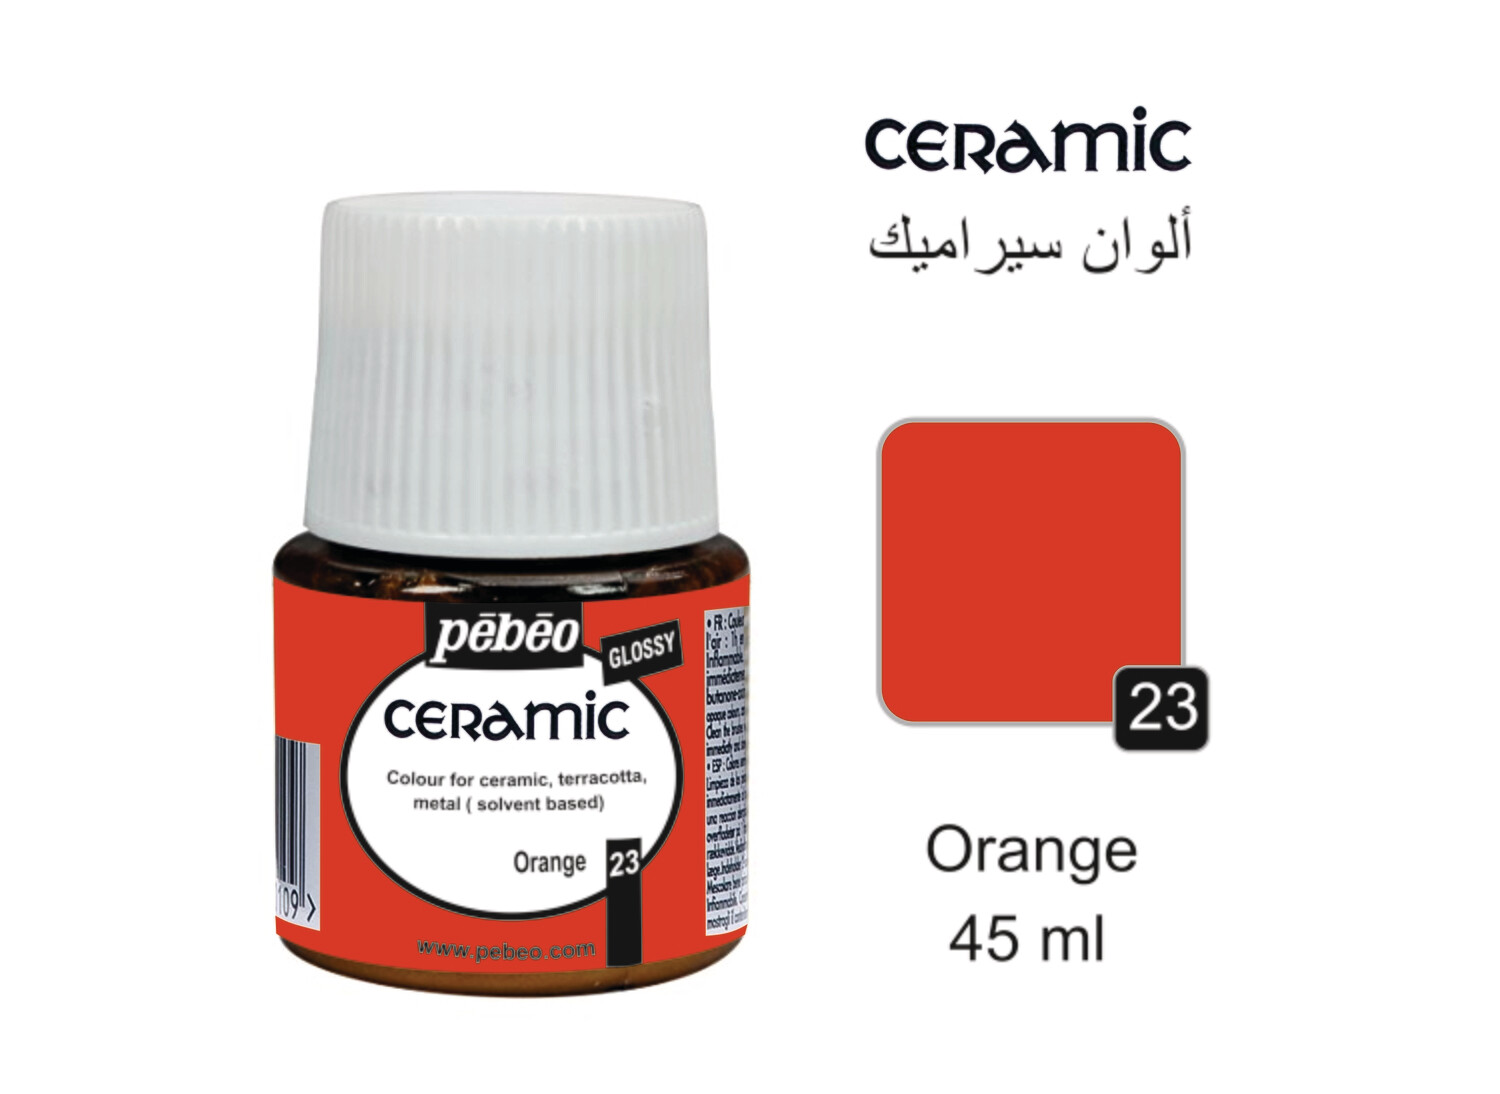 Ceramic colors Orange, 45 ml No. 23